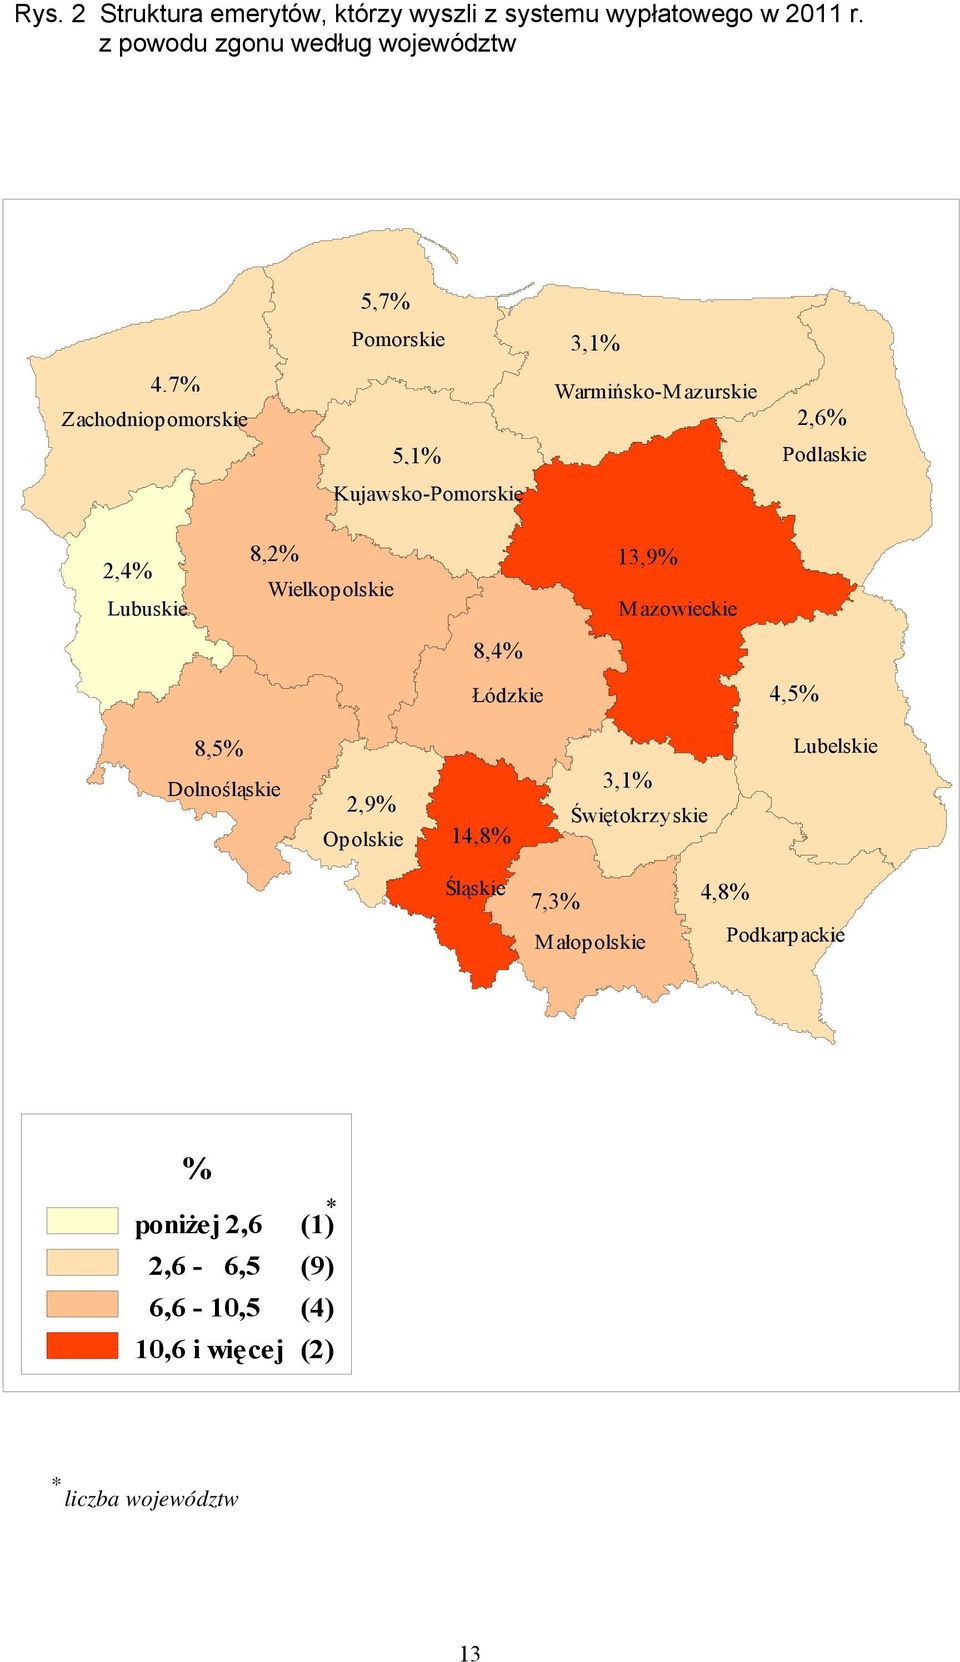 Kujawsko-Pomorskie 2,4% Lubuskie 8,2% 13,9% Wielkopolskie M azowieckie 8,4% Łódzkie 4,5% 8,5% Lubelskie Dolnośląskie